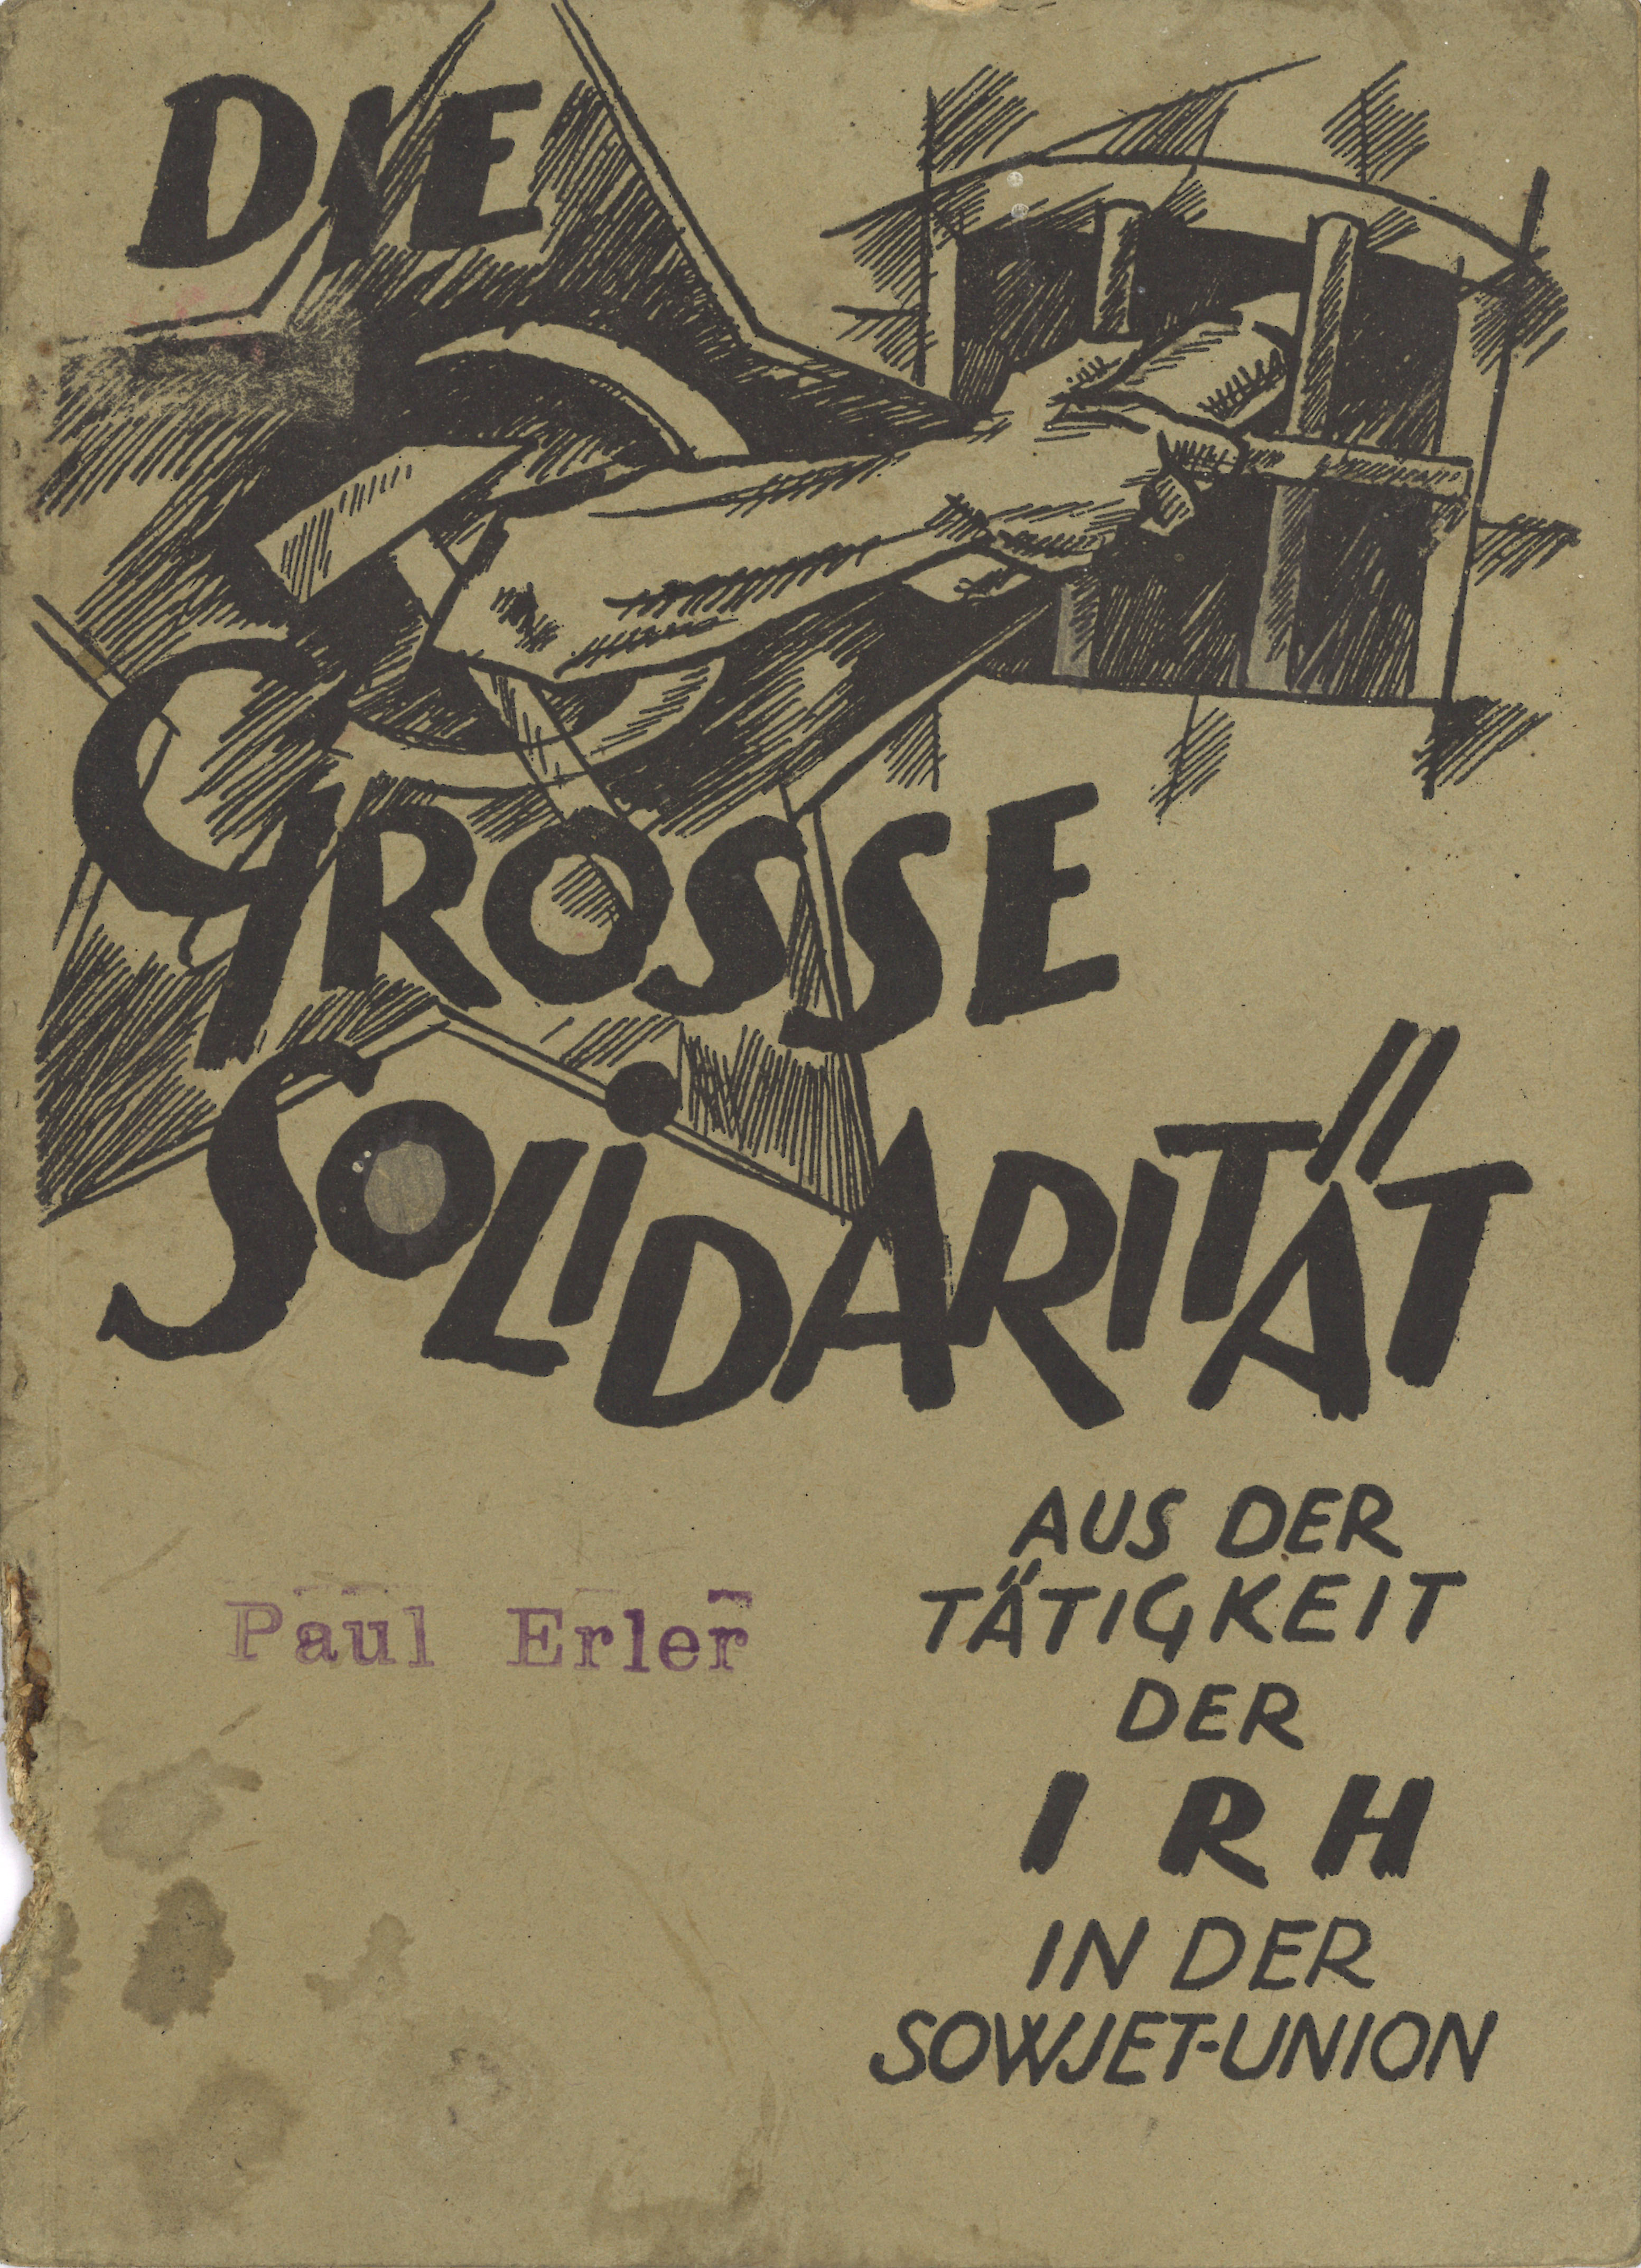 IRH Die grosse Solidarität 1924